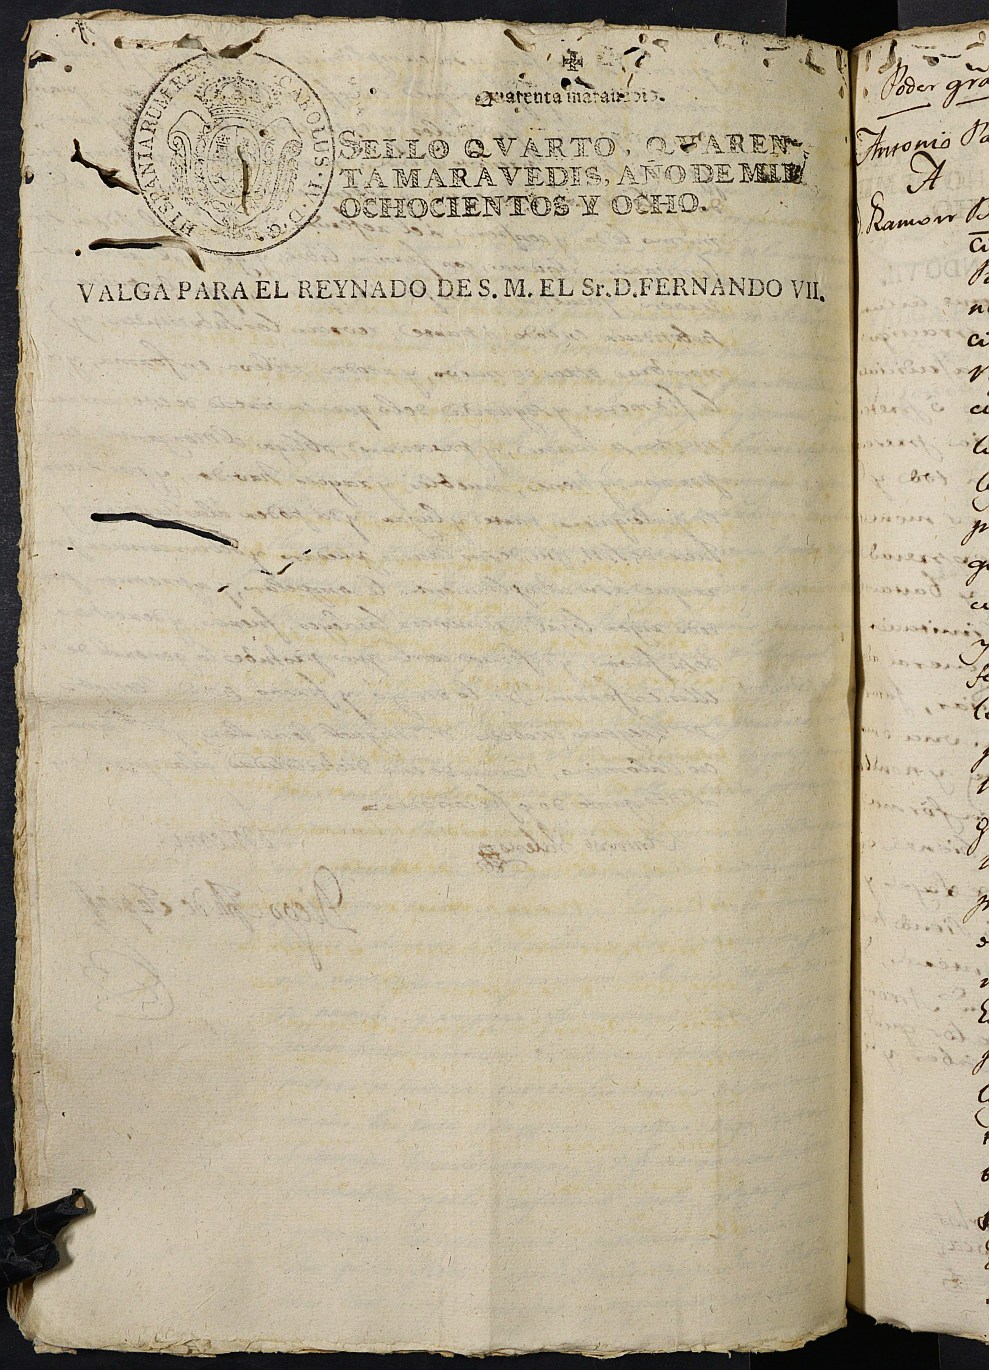 Registro de Agustín Carlos Roca, Cartagena: Escribano de Marina de 1808-1811.